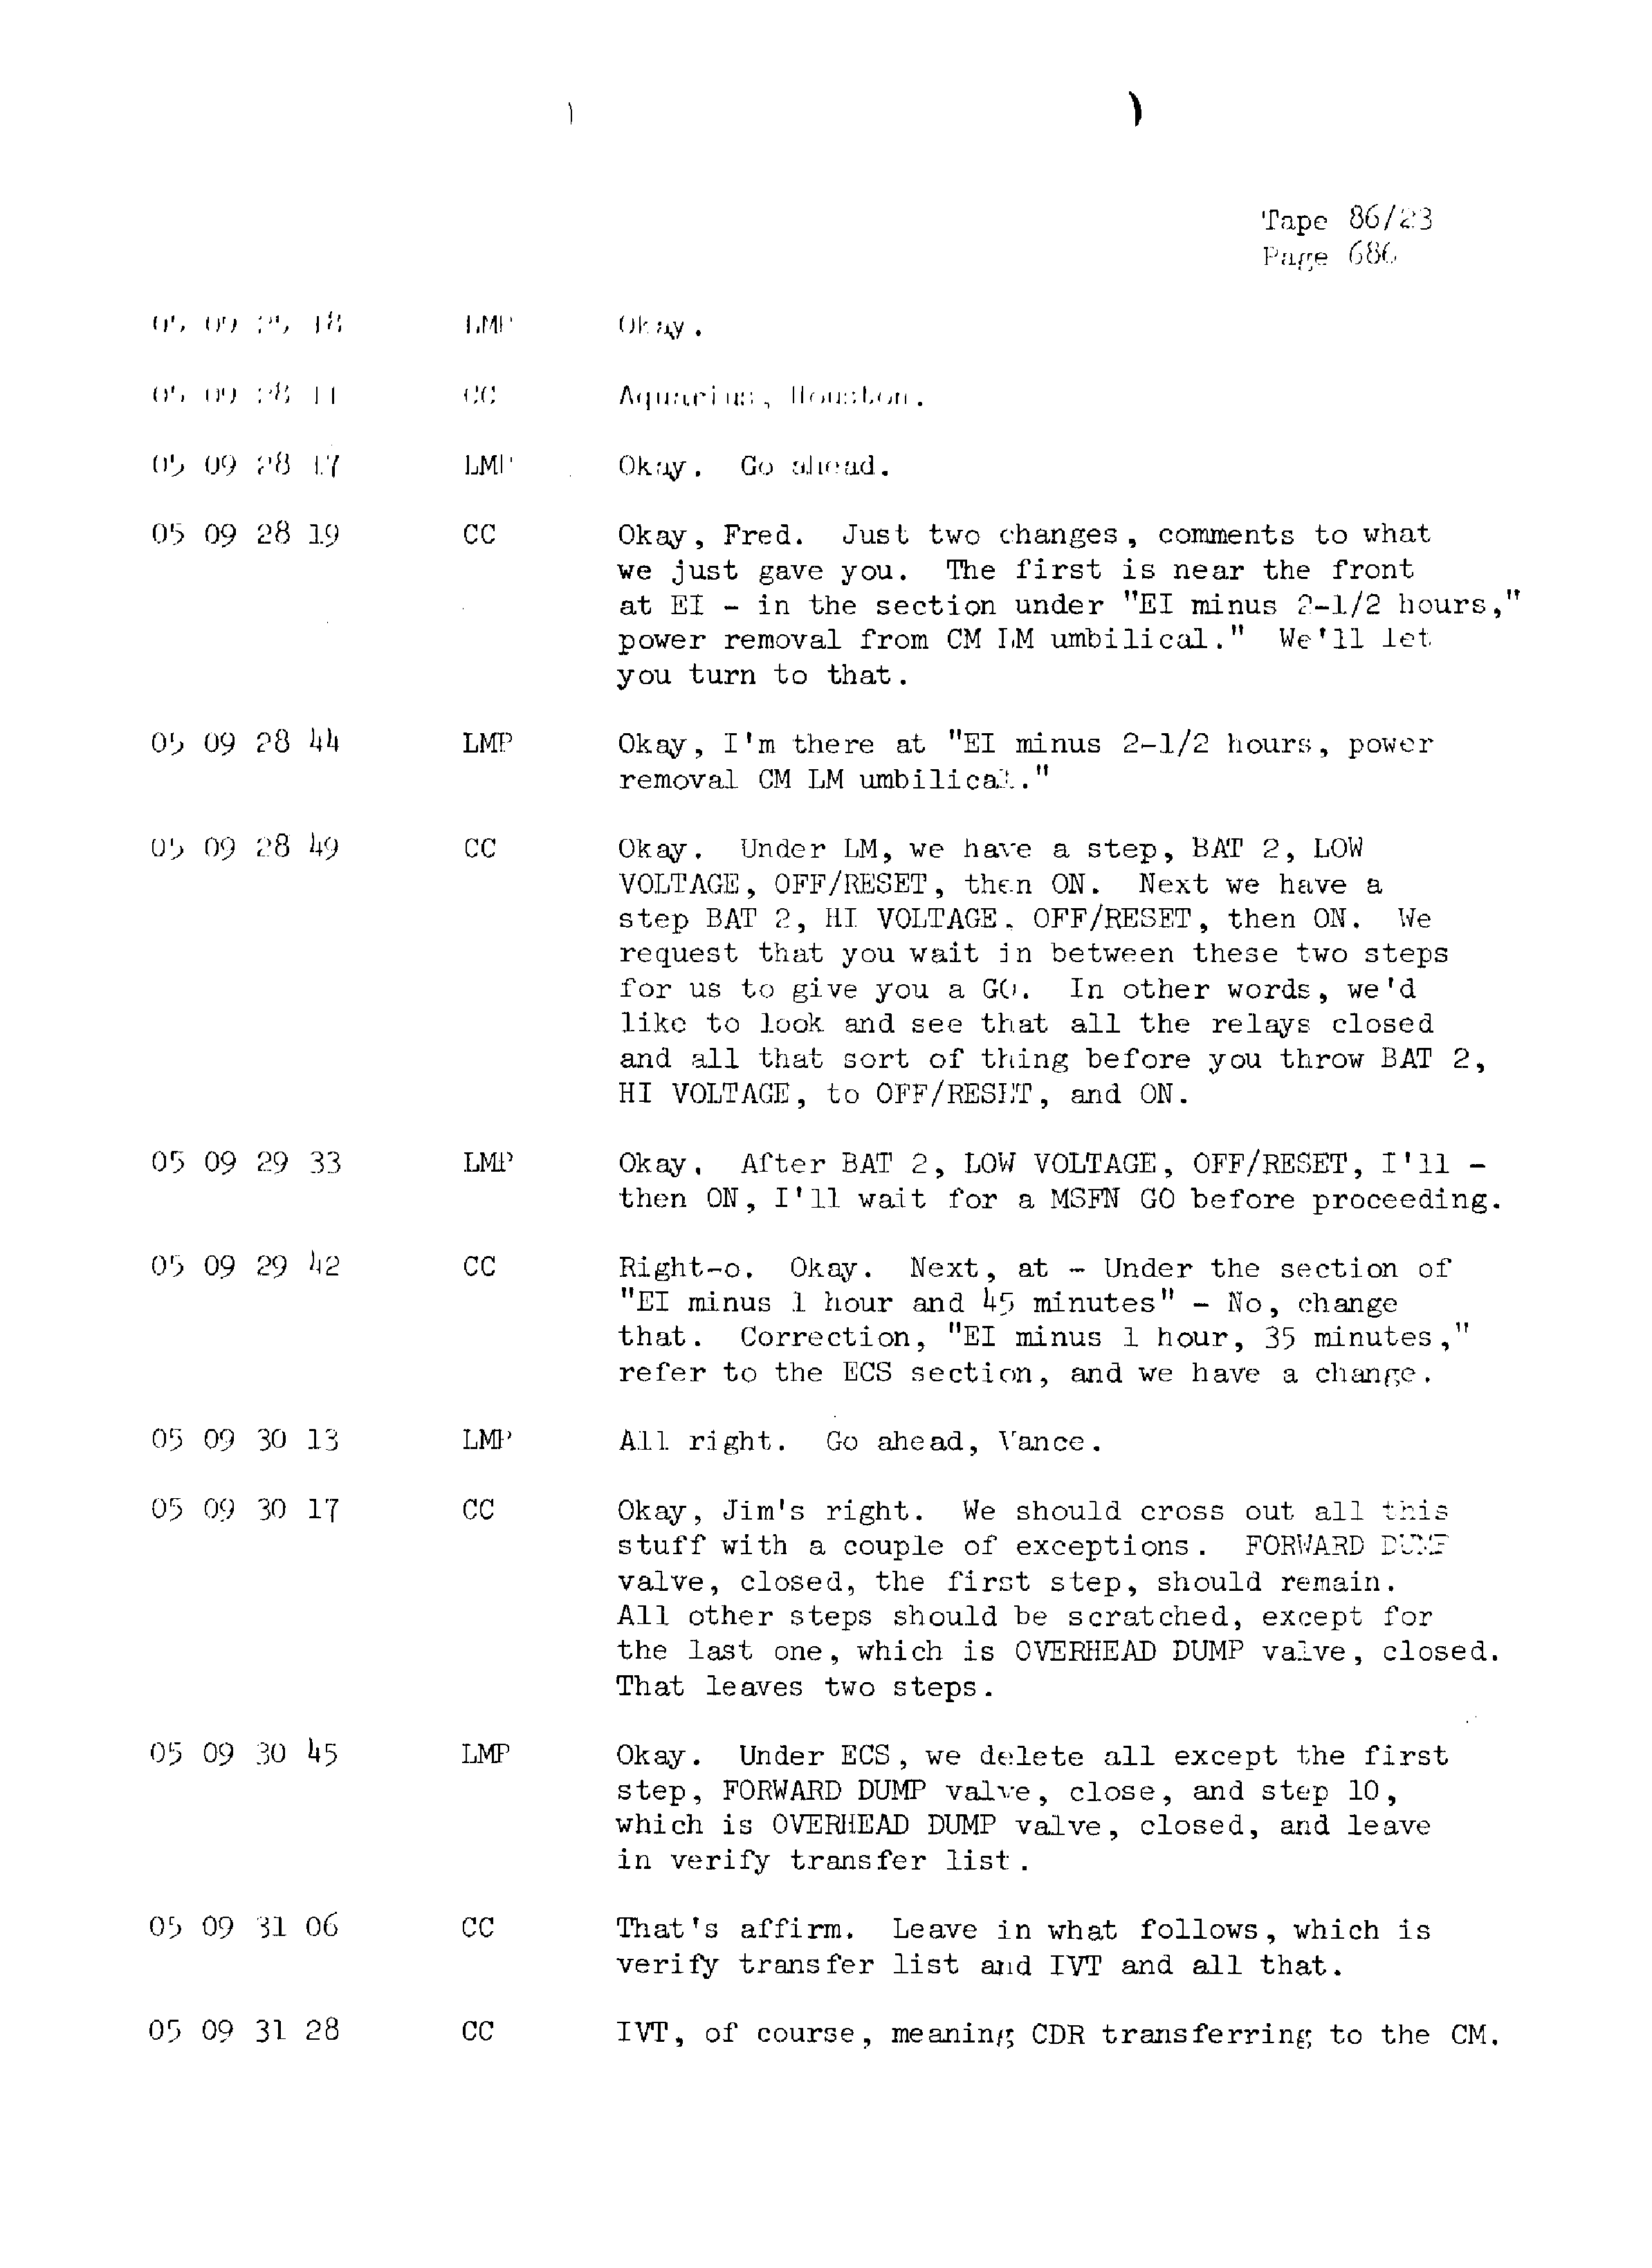 Page 693 of Apollo 13’s original transcript